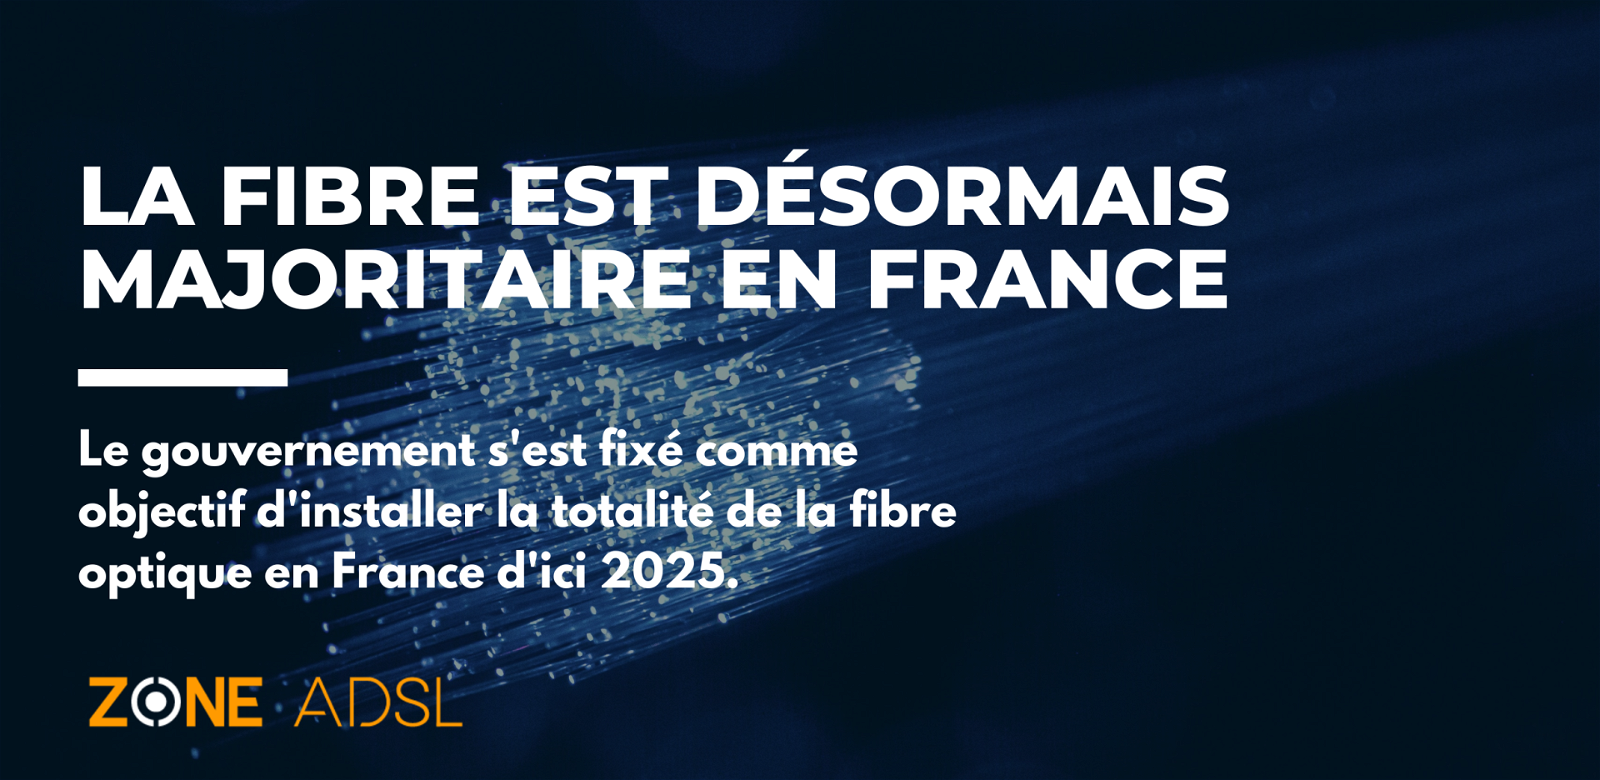 La fibre est désormais majoritaire en France